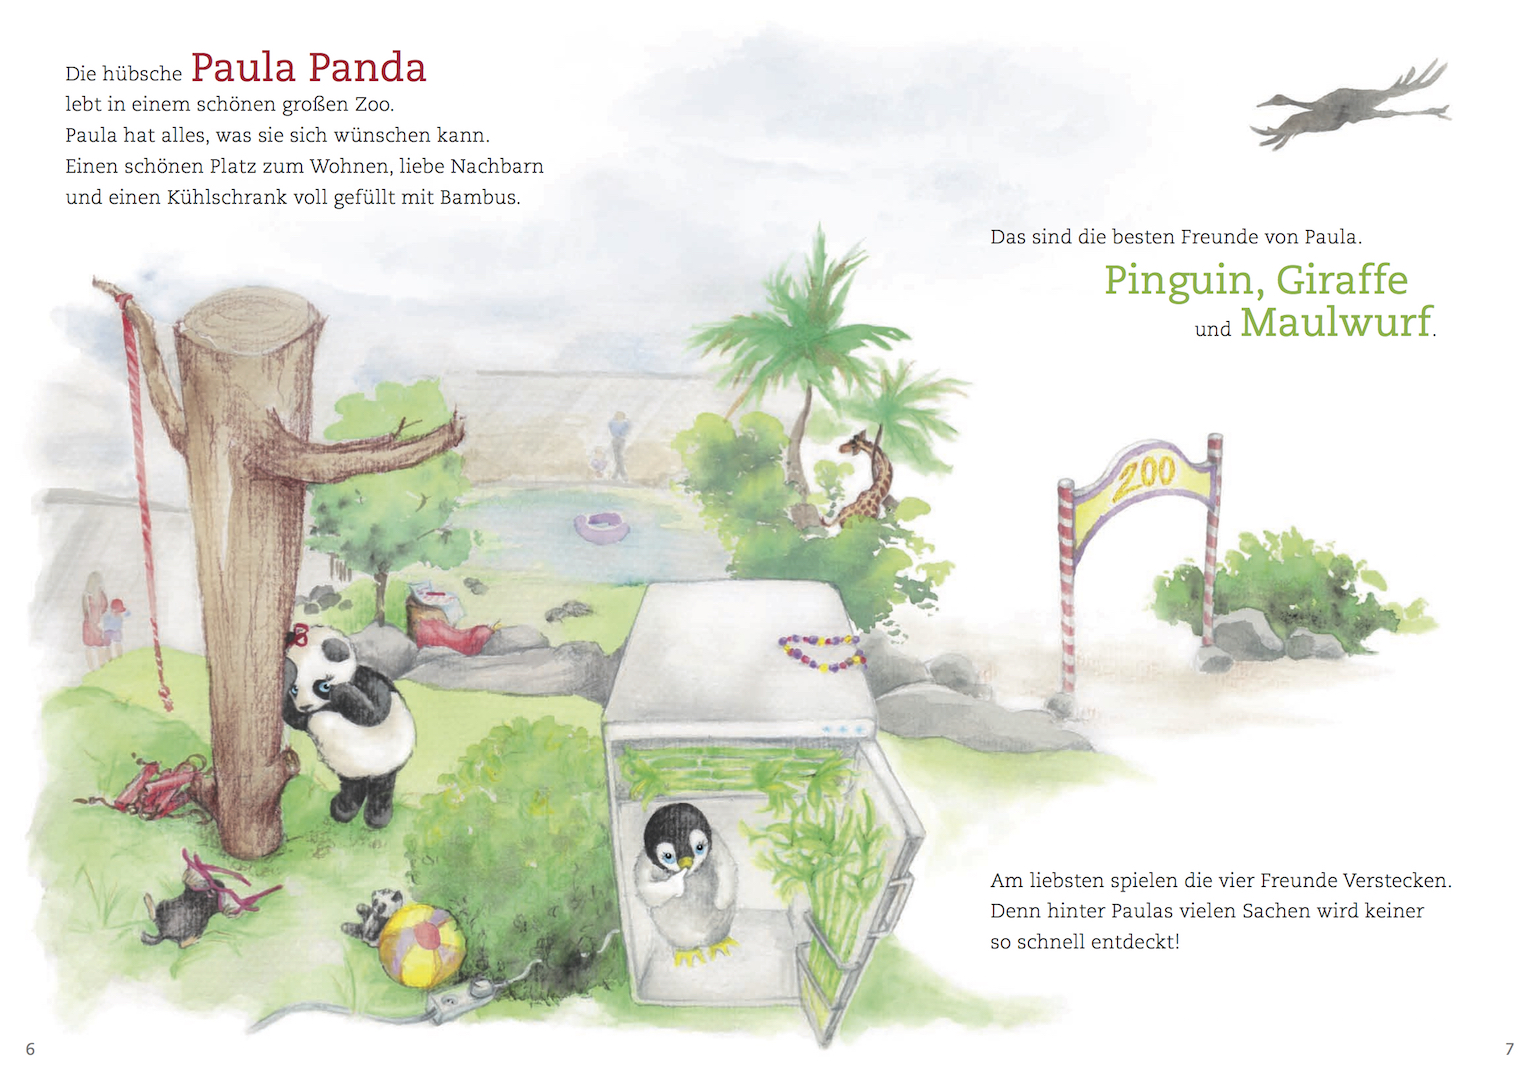 Paula Panda - Der Bambus-Zauberstab - Seite 6 & 7 - ©PaulaPanda.org